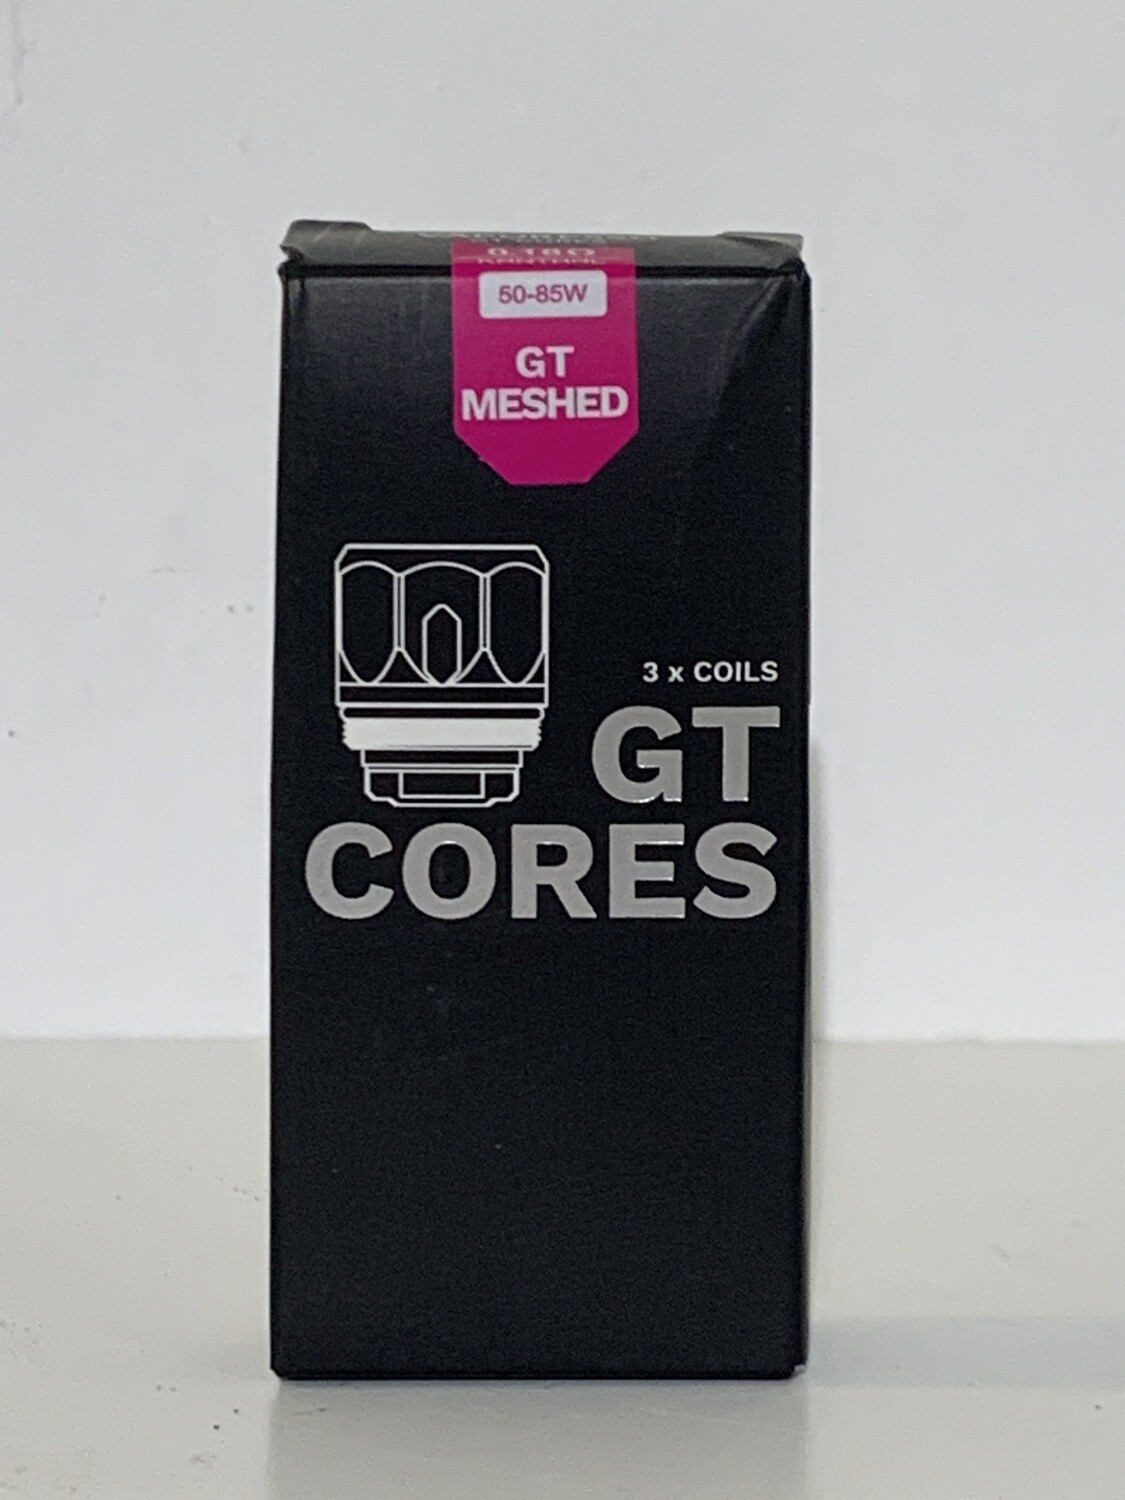 Vaporesso GT Cores Mesh Coils 0.18 50-85W